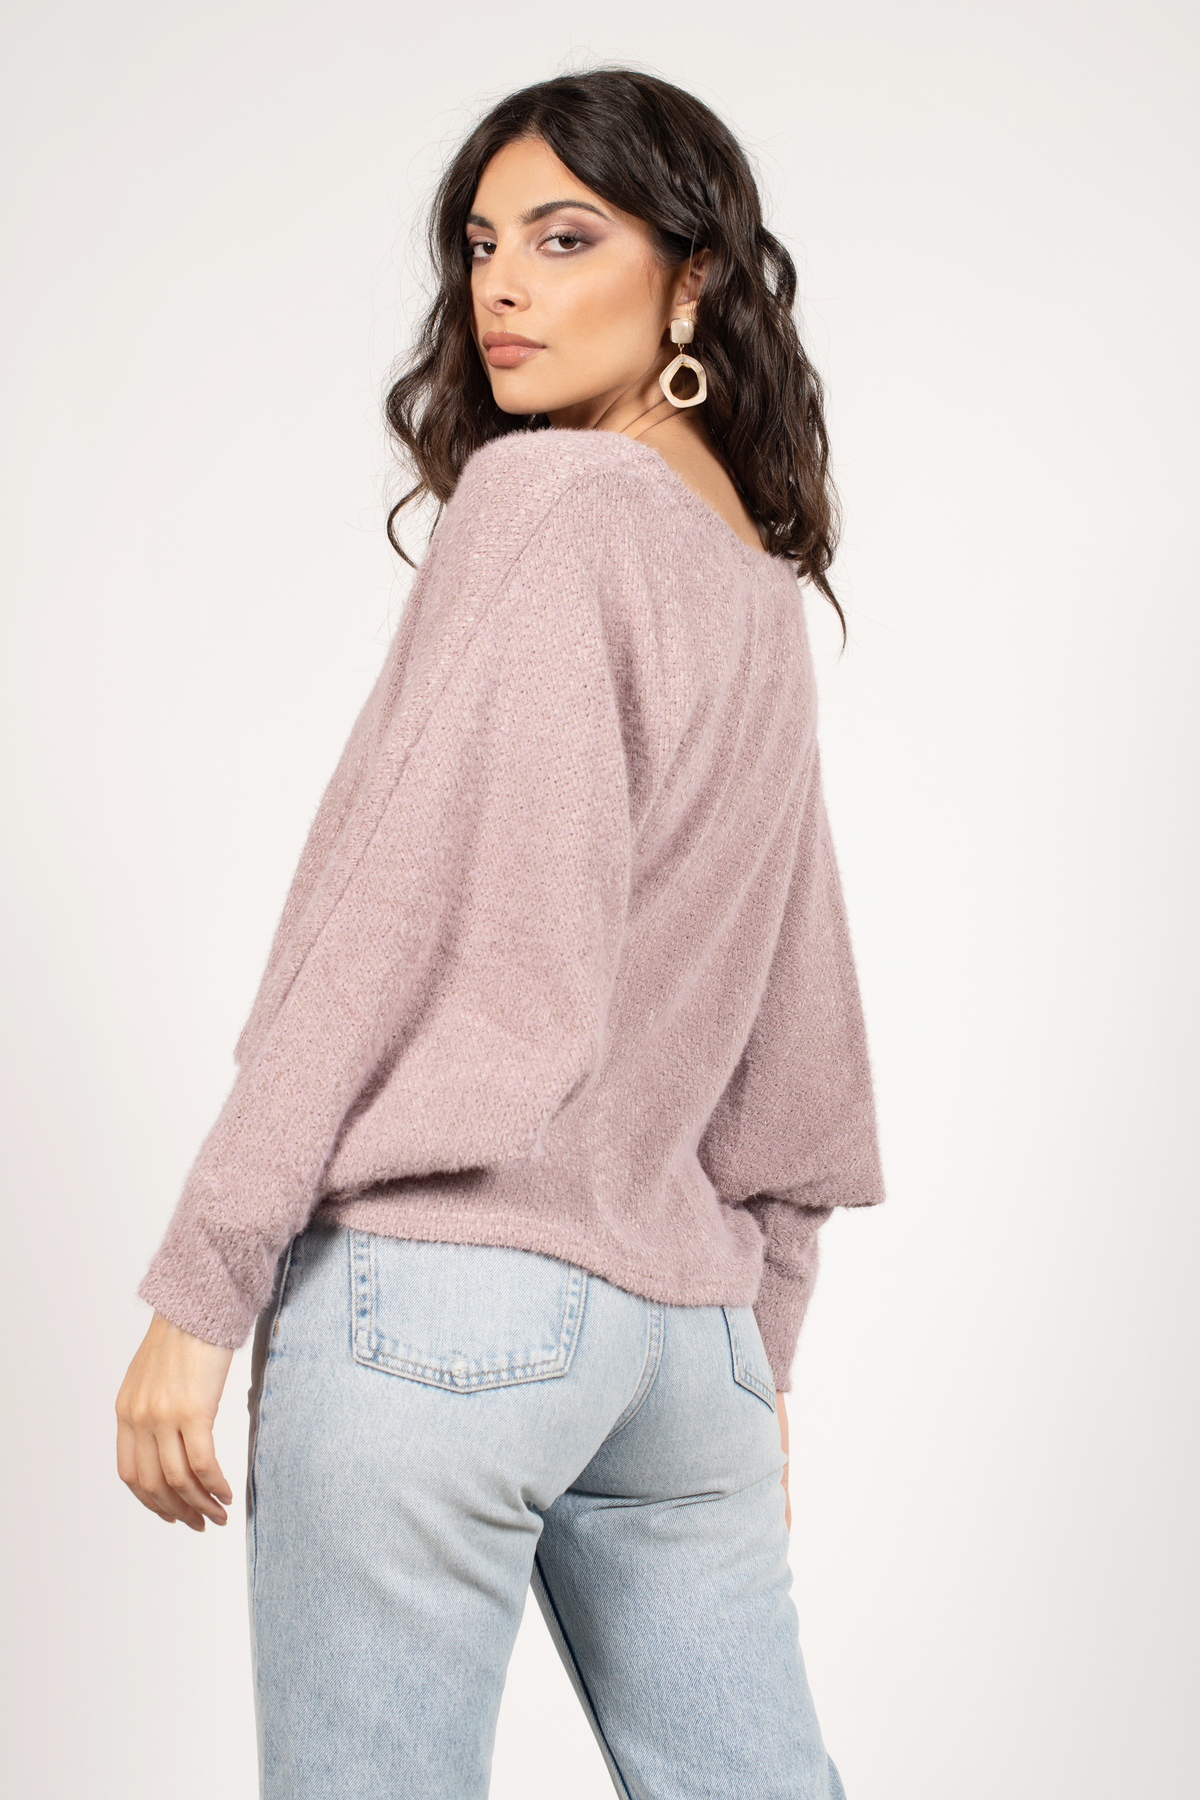 Dusty Lilac Sweater - Purple Dolman Sleeve Sweater - Long Sleeve Sweater